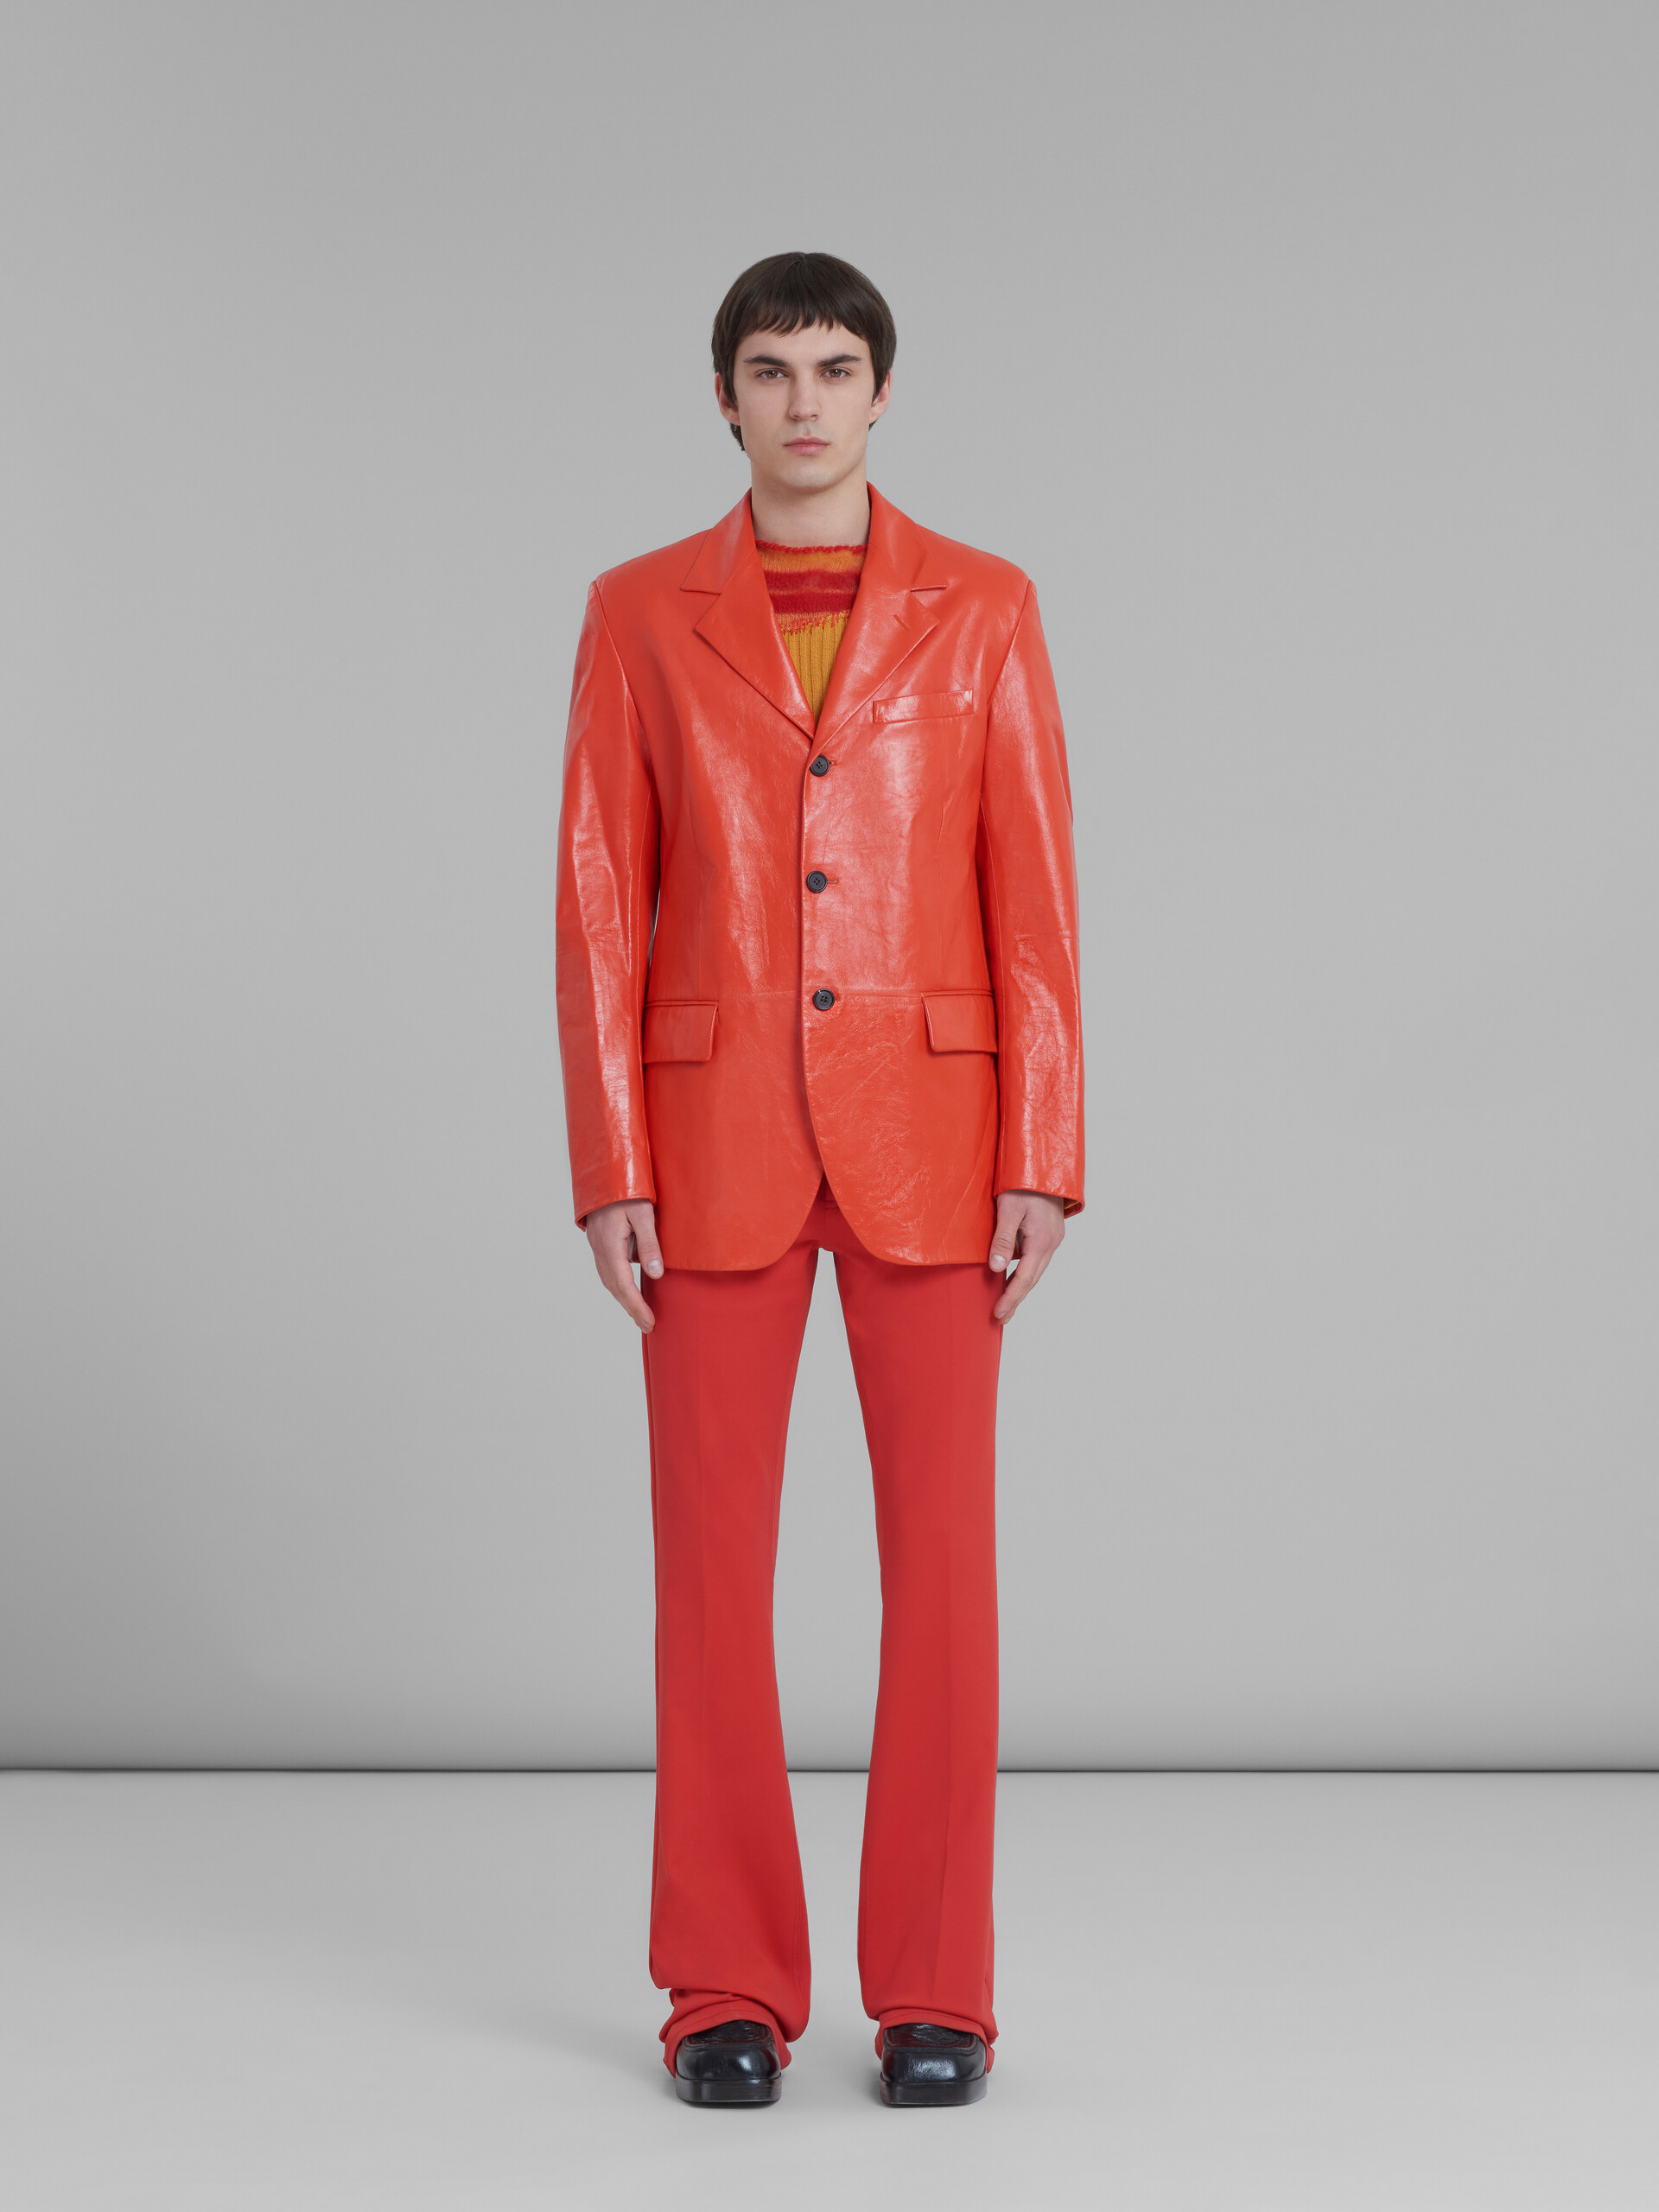 Roter einreihiger Blazer aus ultraleichtem Naplak-Leder - Jacken - Image 2